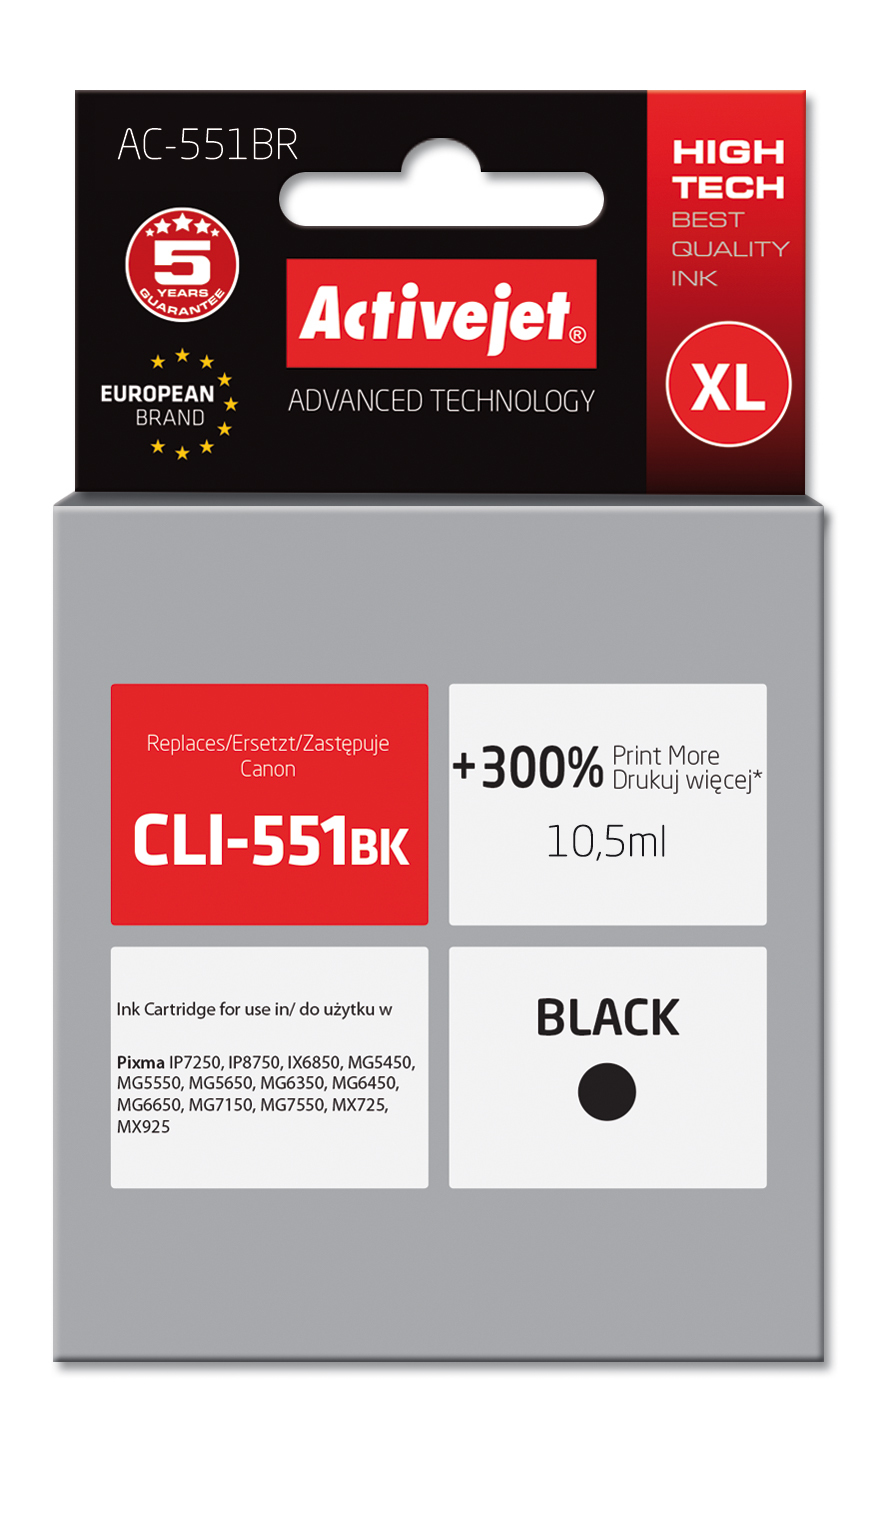 Tusz Activejet AC-551BR do drukarki Canon, Zamiennik Canon CLI-551BK;  Premium;  10,5 ml;  czarny. Drukuje więcej o 300%.